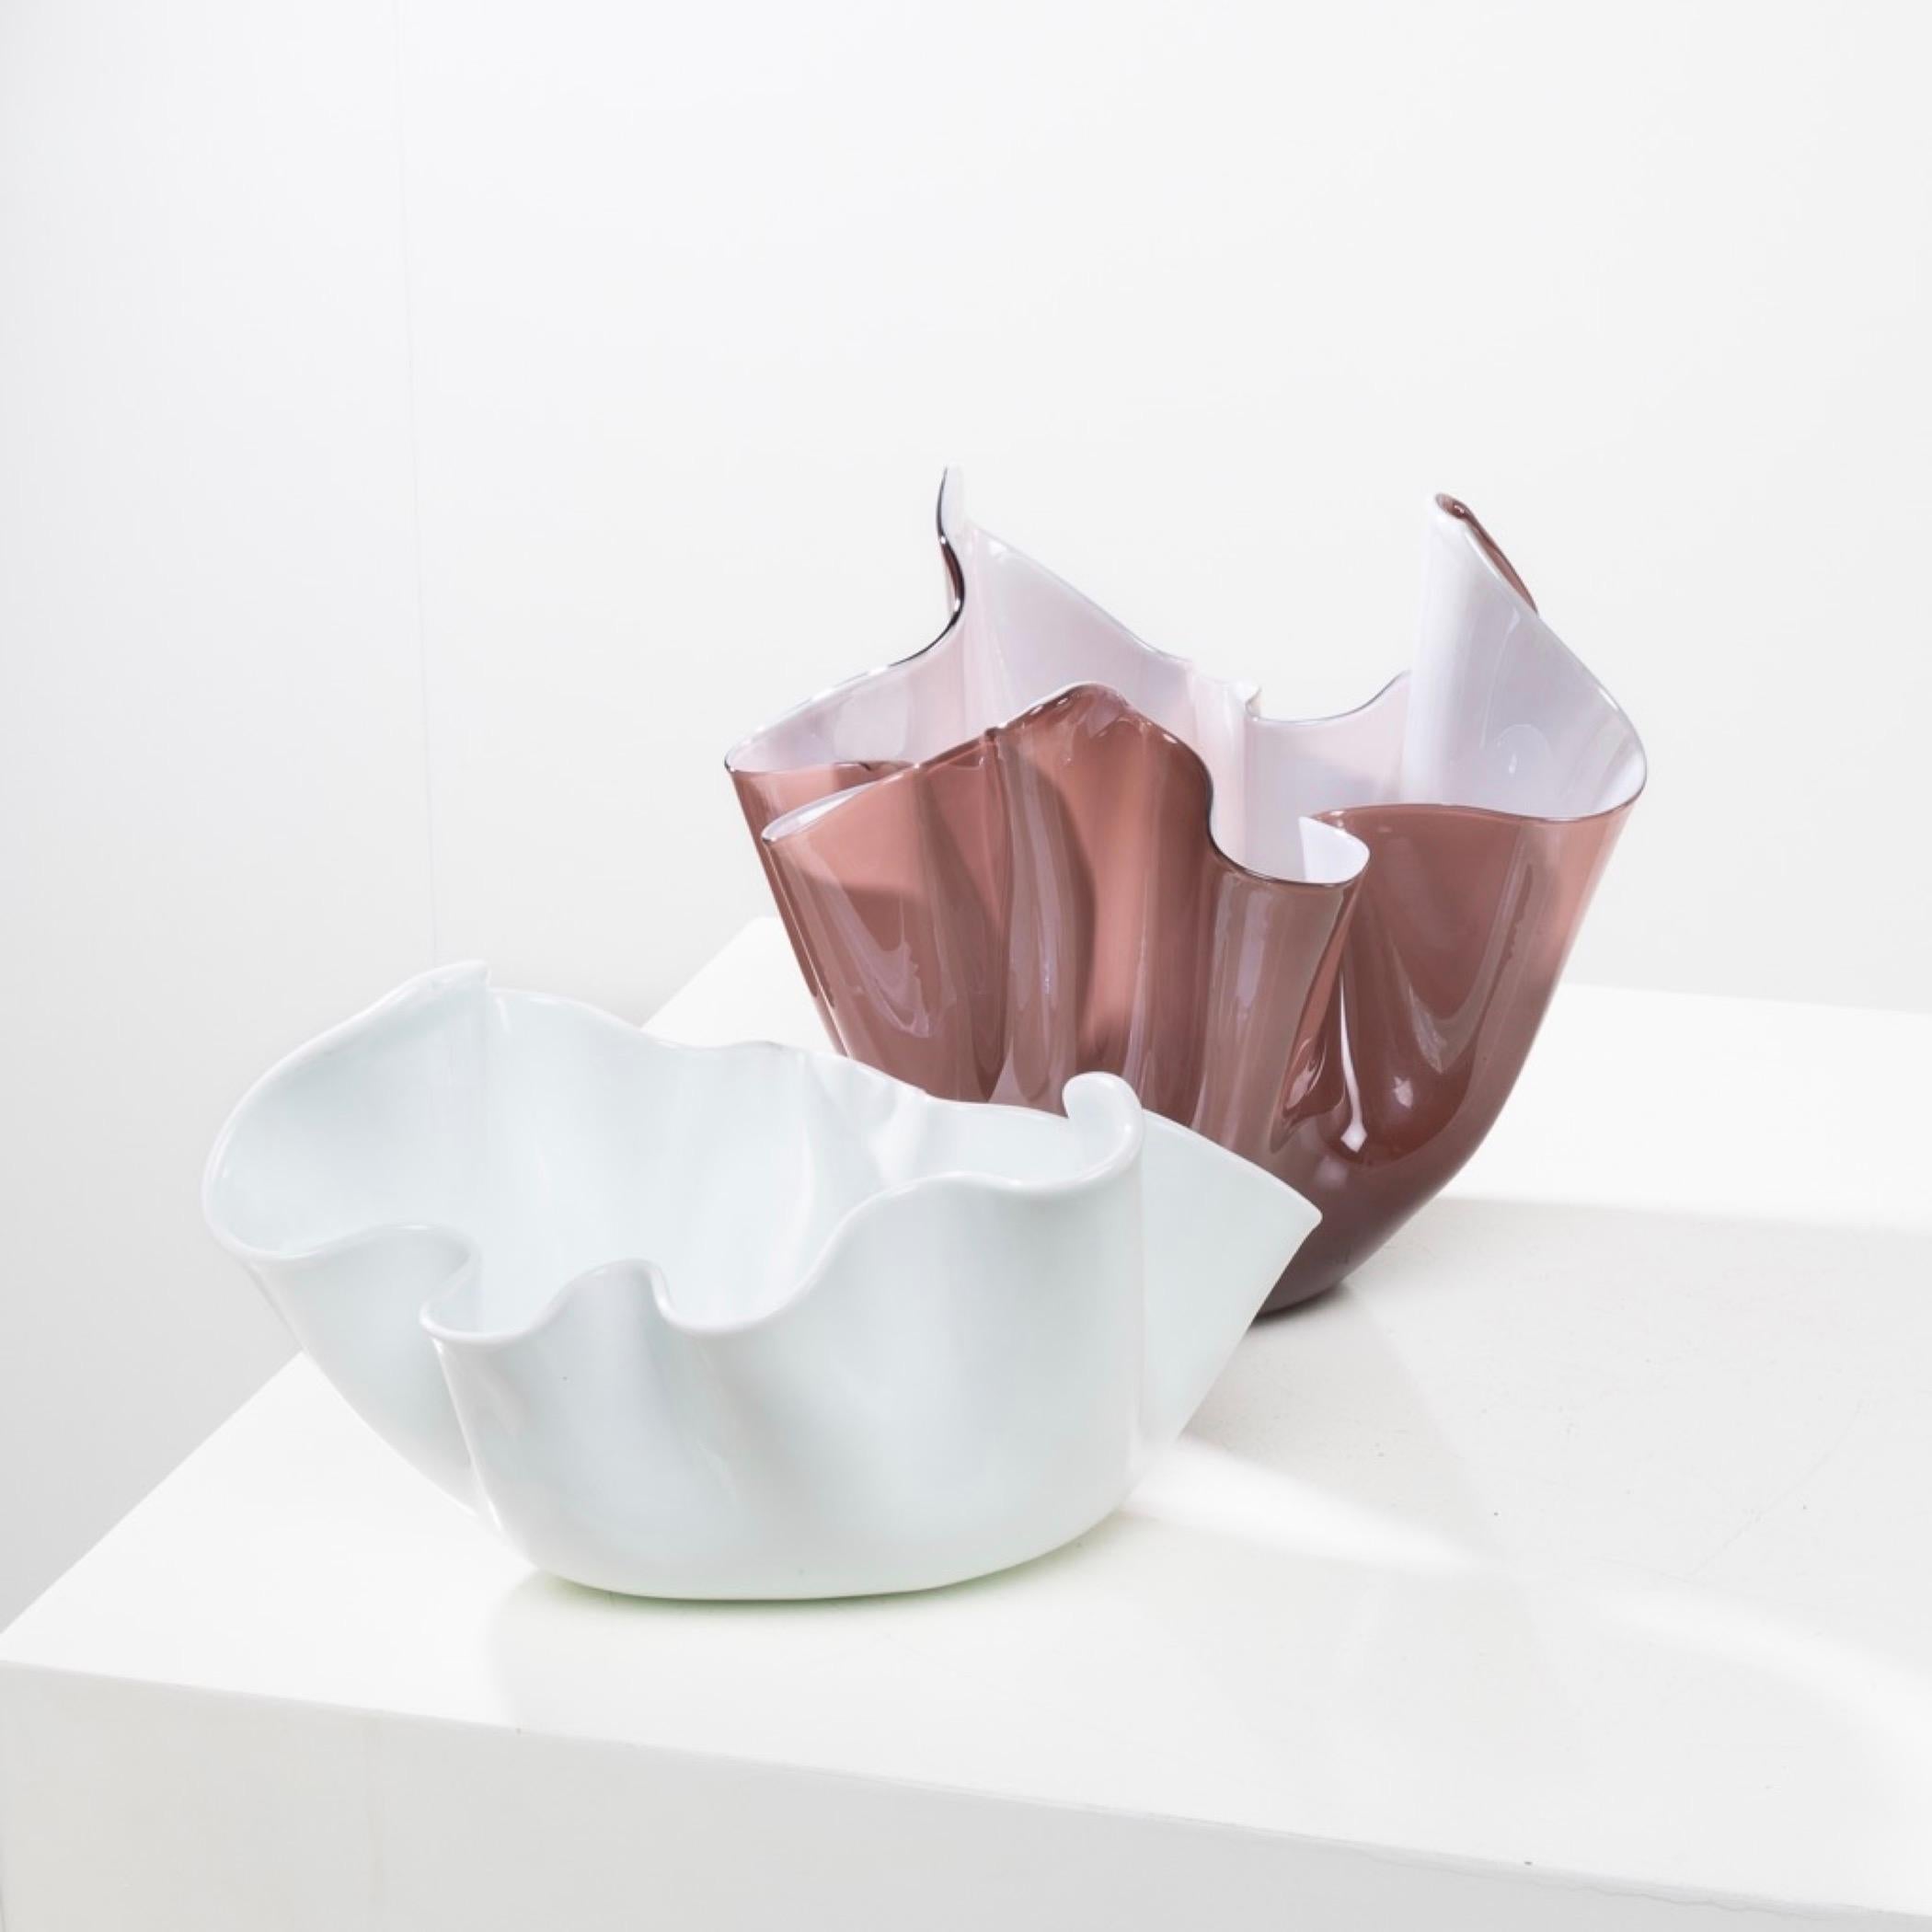 Fazzoletto by Fulvio Bianconi – Handkerchief vase – Venini Murano For Sale 8